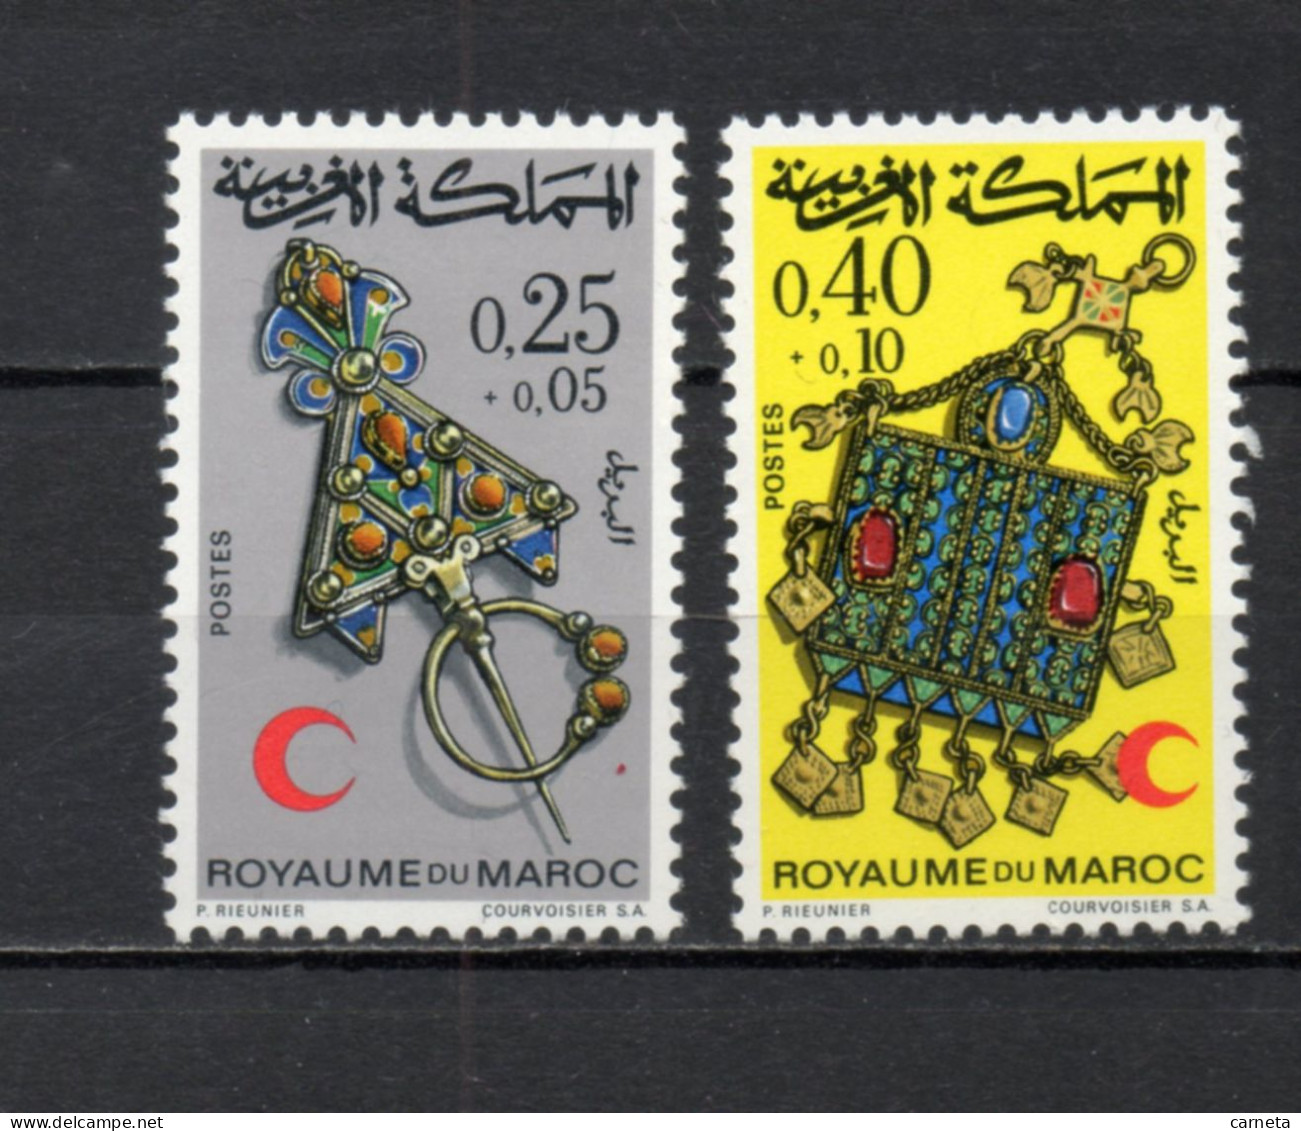 MAROC N°  616 + 617     NEUFS SANS CHARNIERE  COTE 4.05€    CROISSANT ROUGE - Marruecos (1956-...)